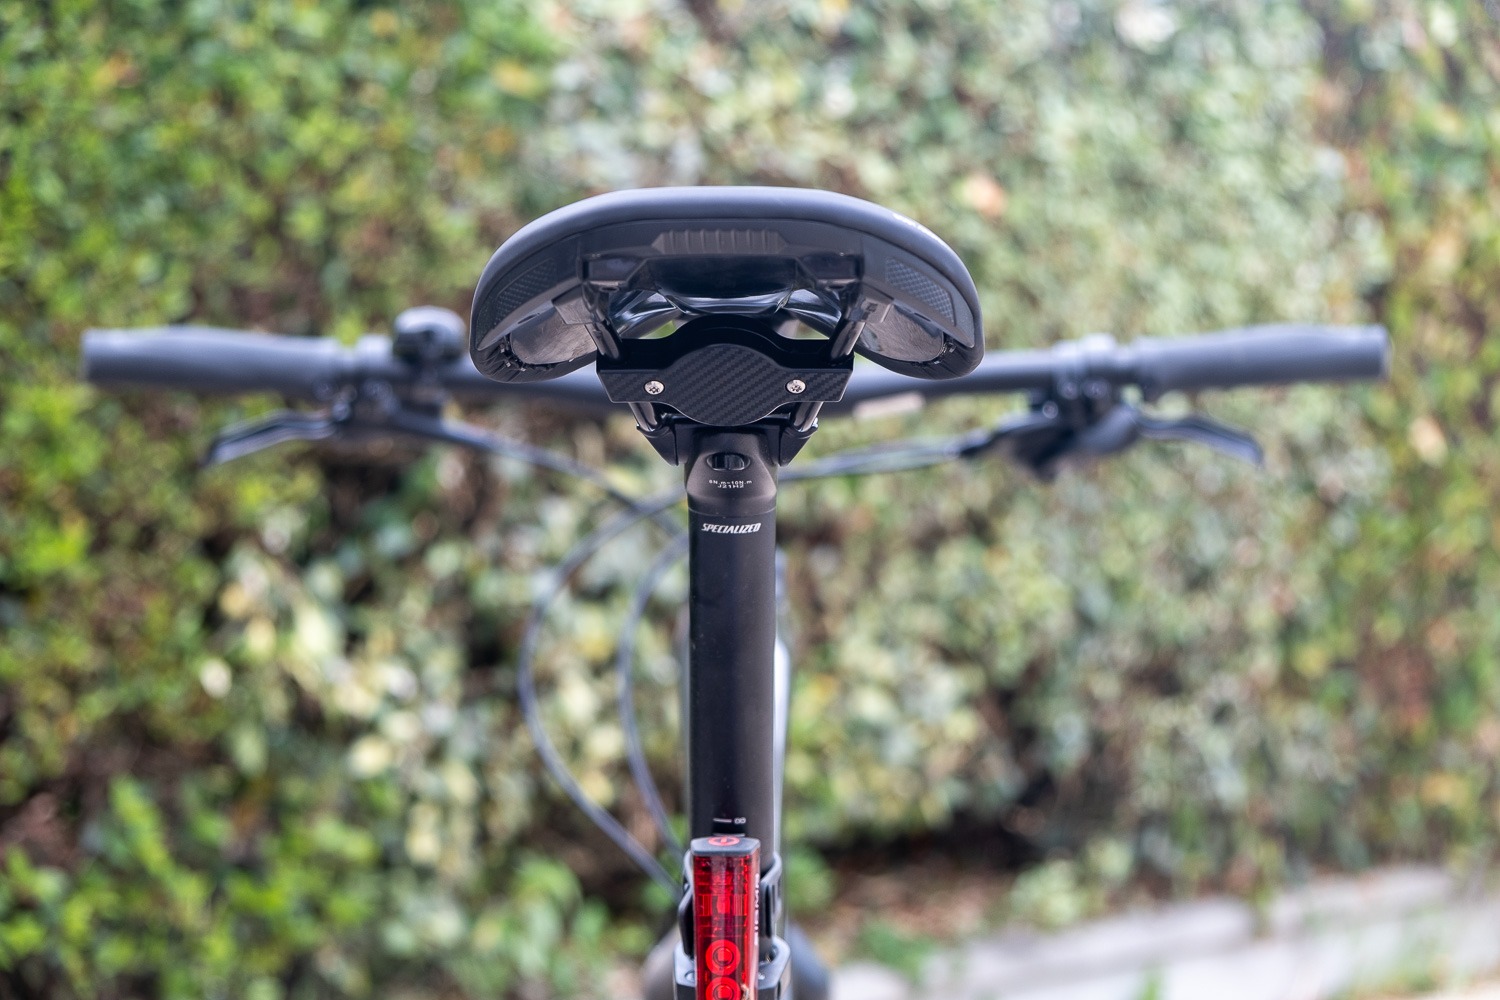 Installer un AirTag discrètement sur son vélo pour le localiser